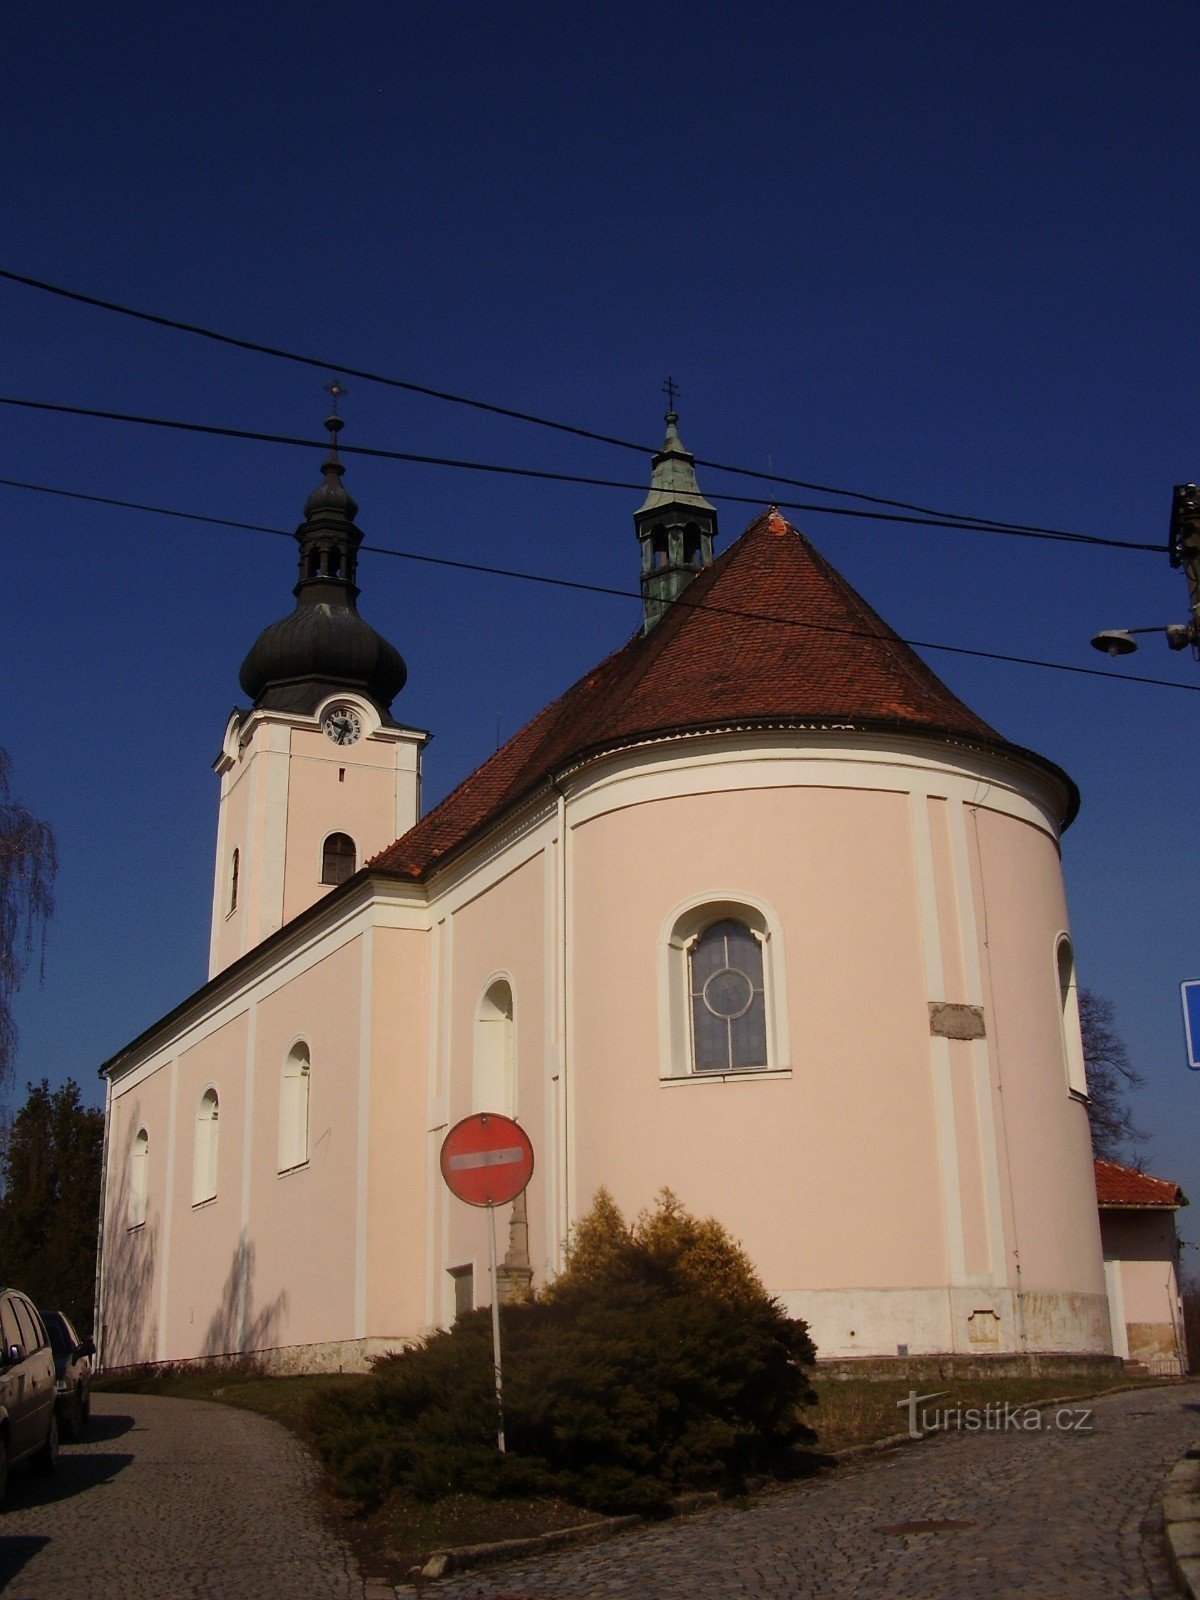 Chiesa Parrocchiale di S. Nicola in Oslavany